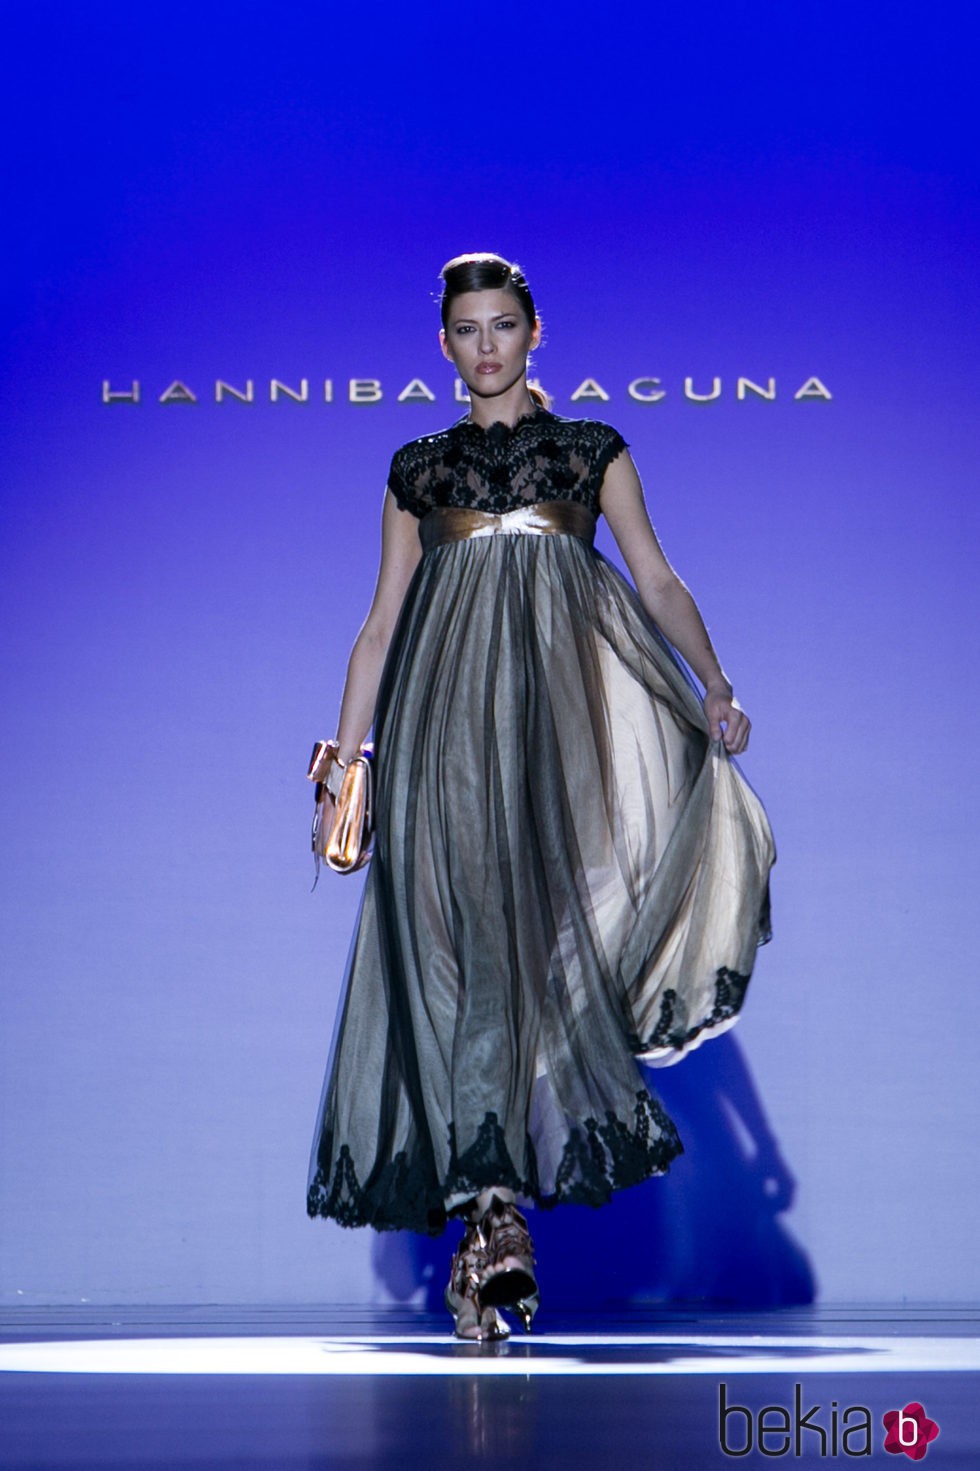 Vestido negro y gris de Hannibal Laguna para primavera/verano 2016 en Madrid Fashion Week